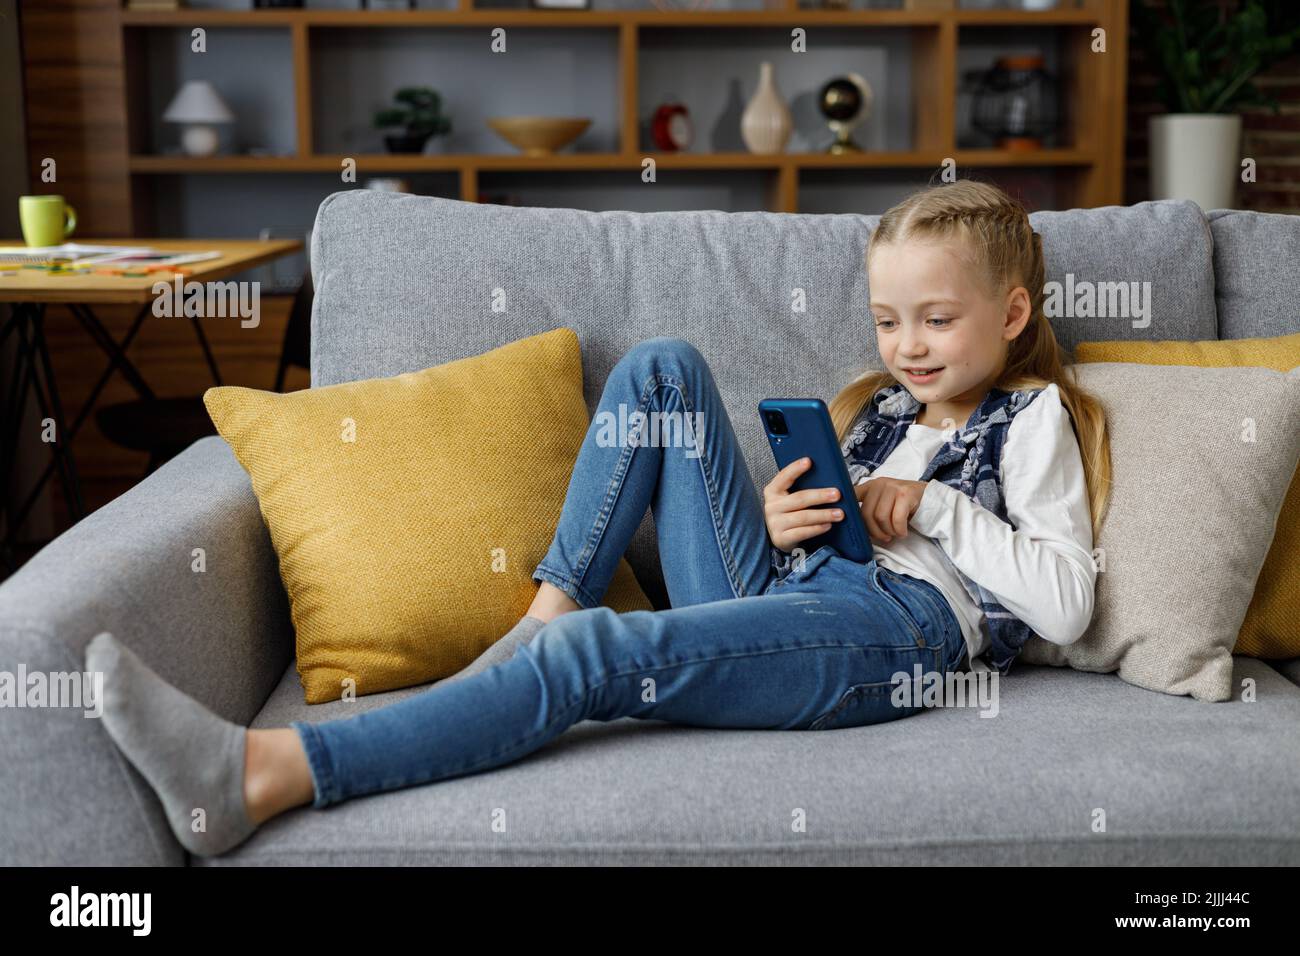 Porträt von niedlichen kleinen niedlichen Mädchen hält Smartphone und ruht auf dem Sofa zu Hause. Auswählen von Lieblingsmusik oder -Cartoons, SMS senden, Surfen Stockfoto